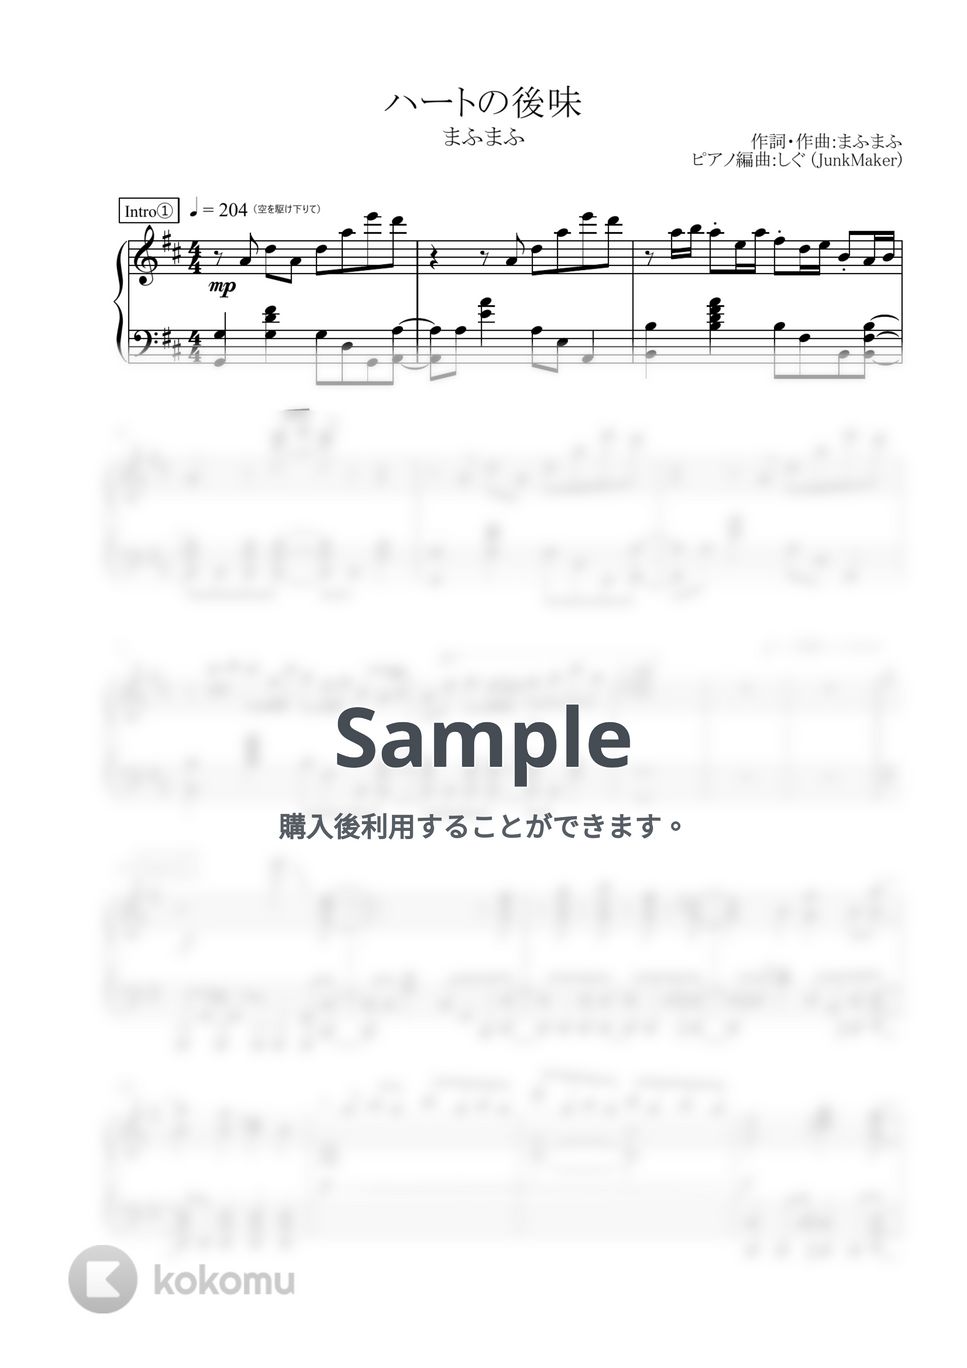 まふまふ - ハートの後味 (ピアノソロ) by しぐ (JunkMaker)